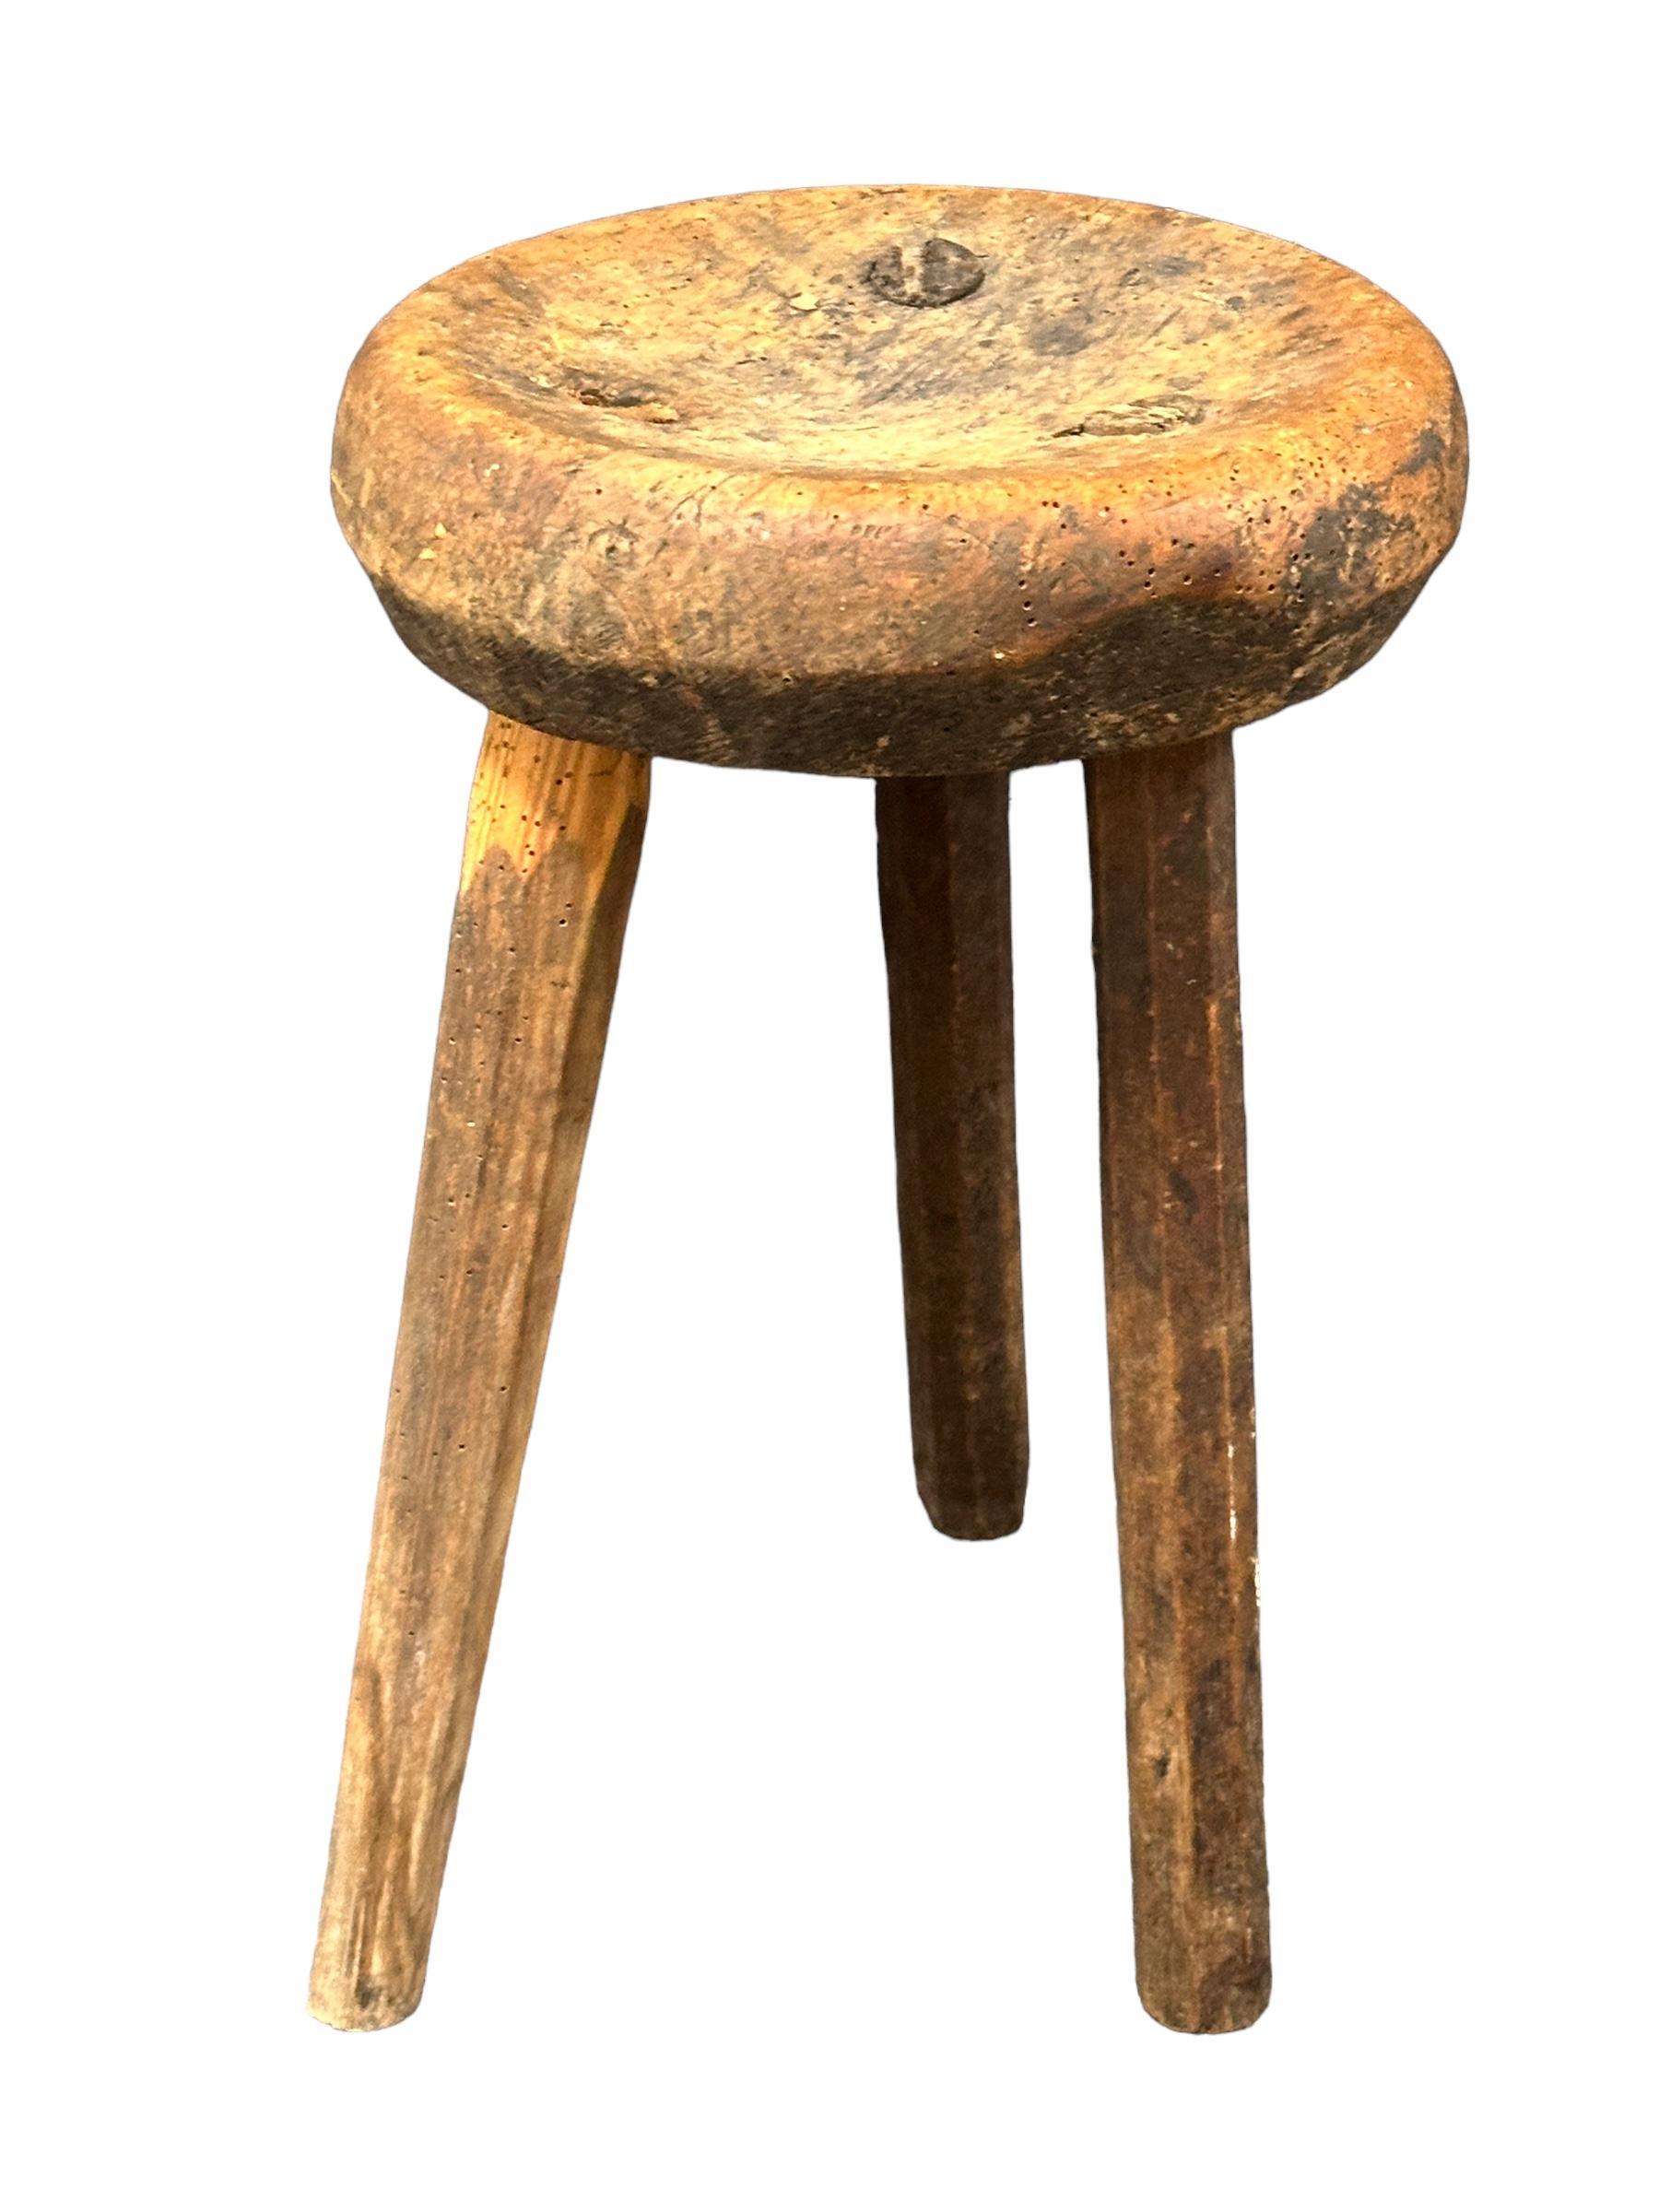 Dieser 3-beinige Wabi-Sabi-Werkstatthocker aus Deutschland aus dem frühen 20. Jahrhundert ist ein hervorragendes Beispiel für diesen Stil. Das Stück hat einen quadratischen, rustikal anmutenden Sitz aus Holz und wird von drei Beinen getragen. Der